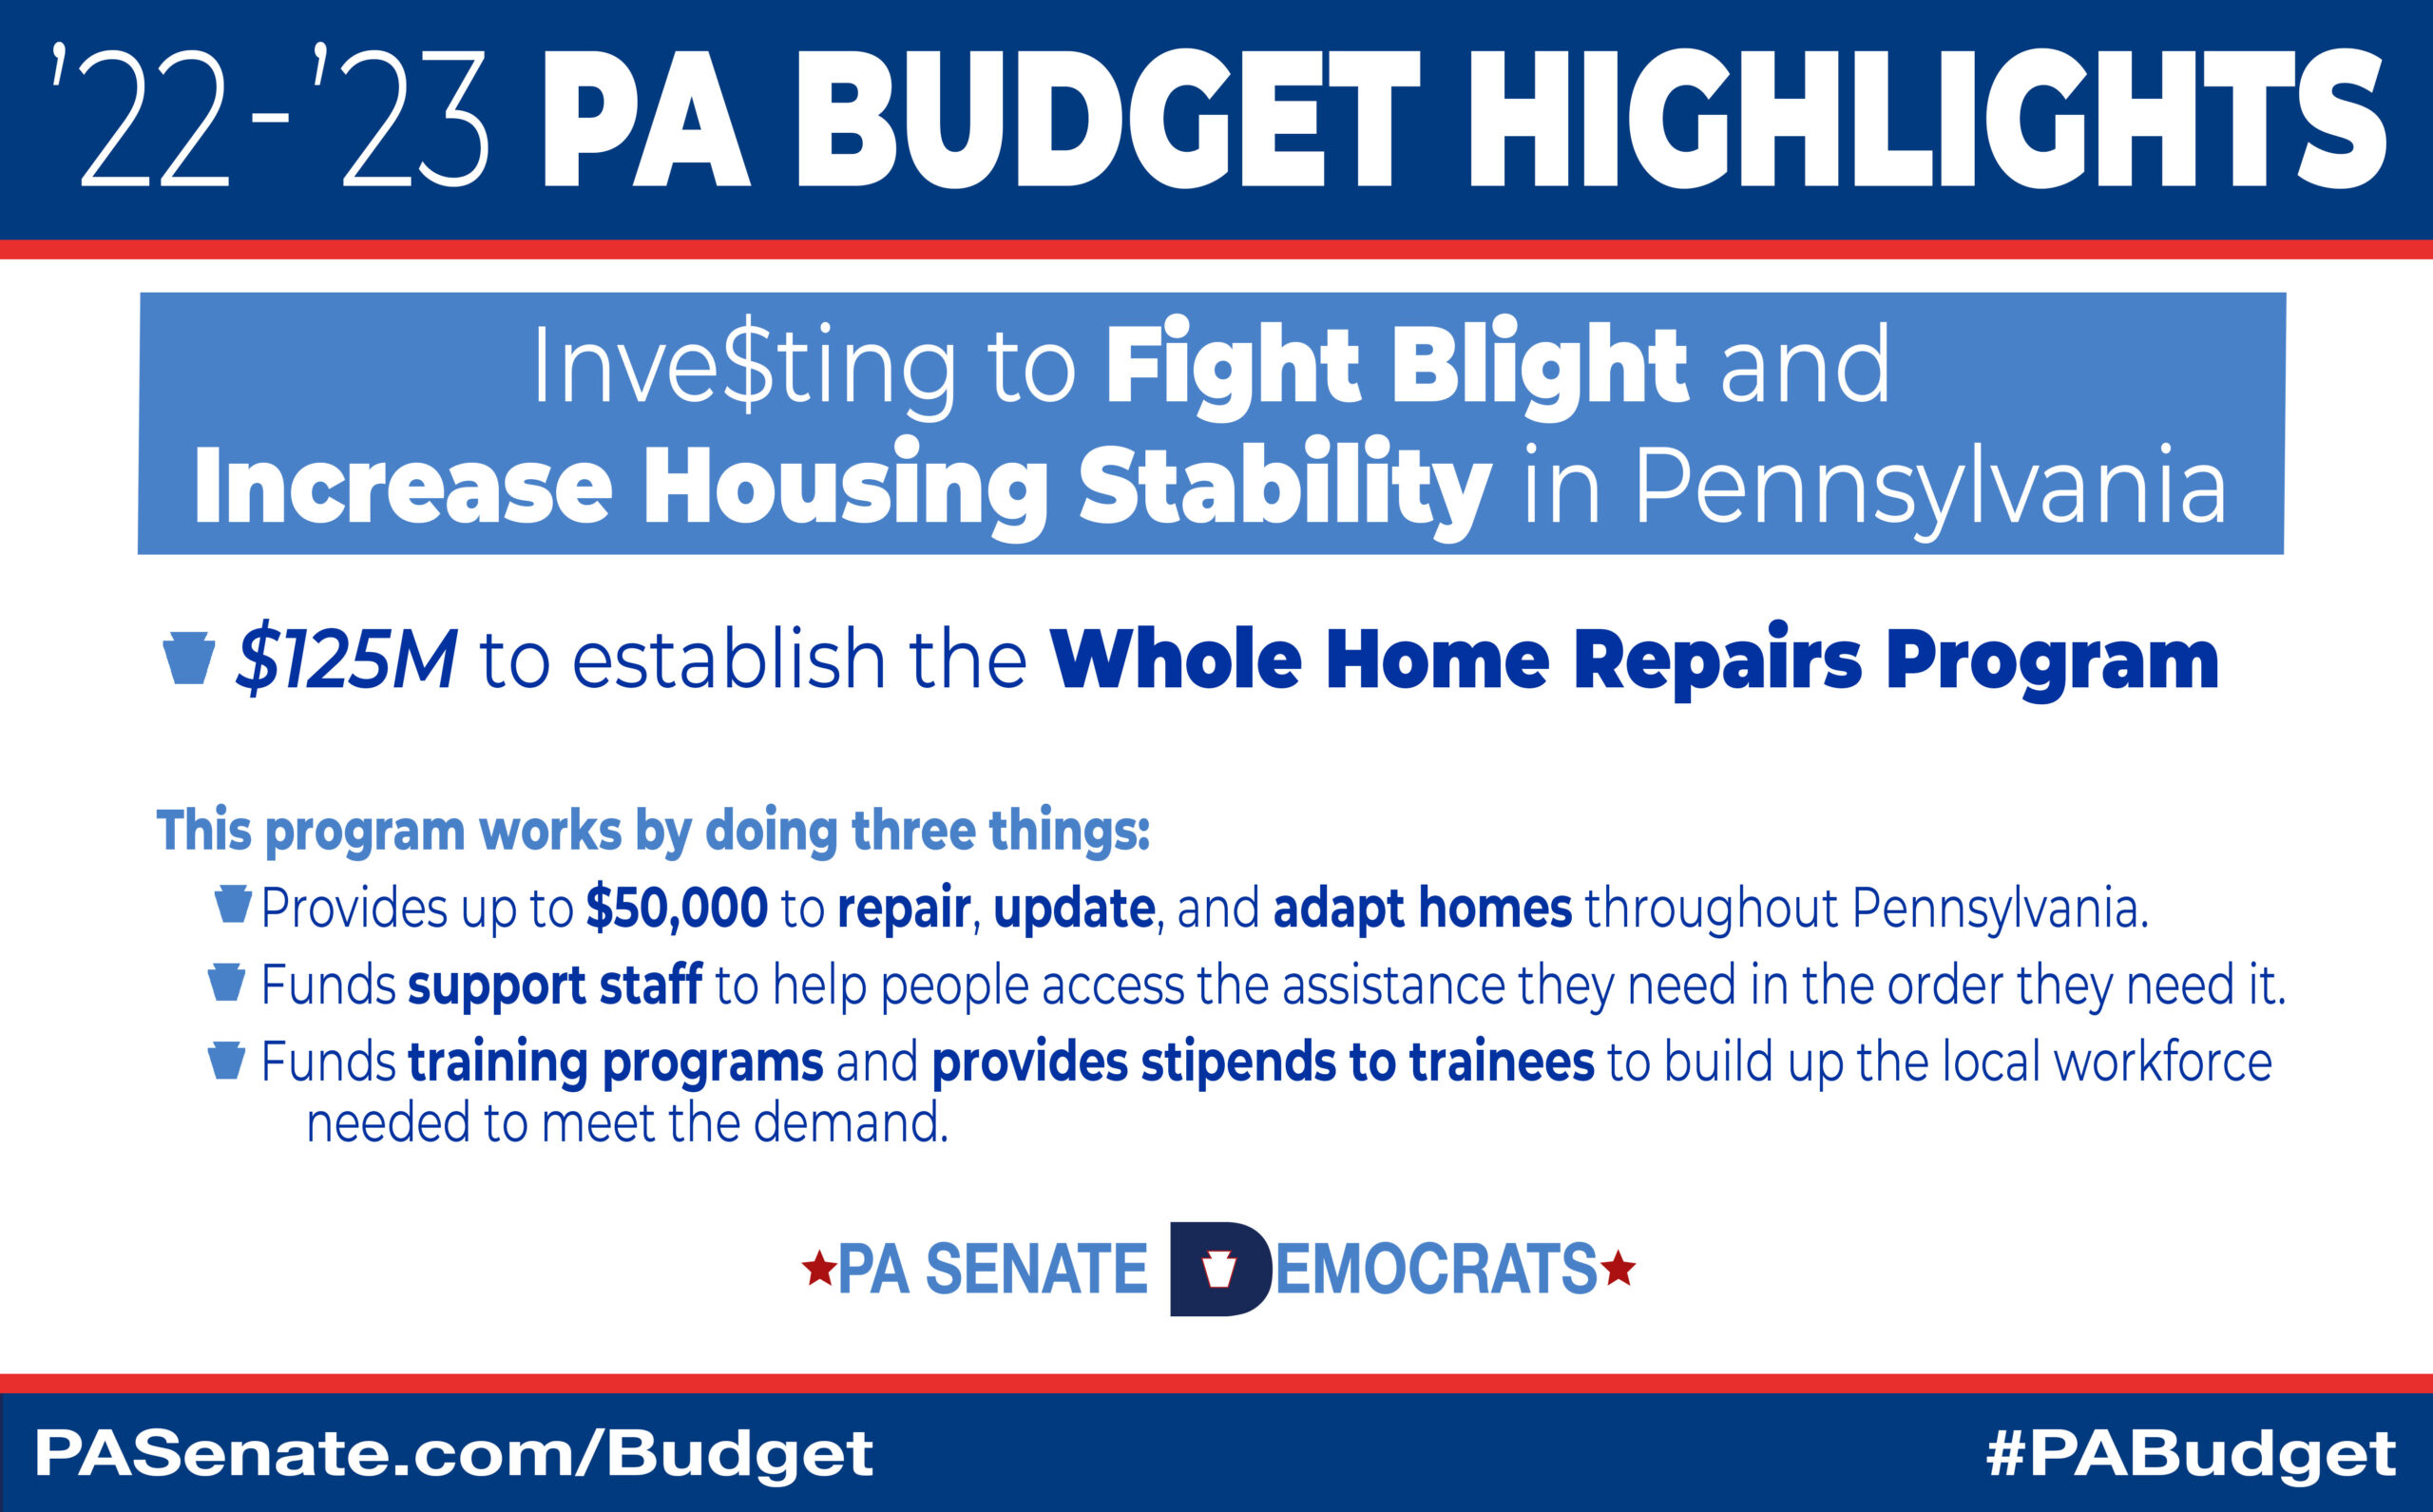 Invertir para combatir el deterioro y aumentar la estabilidad de la vivienda en Pensilvania